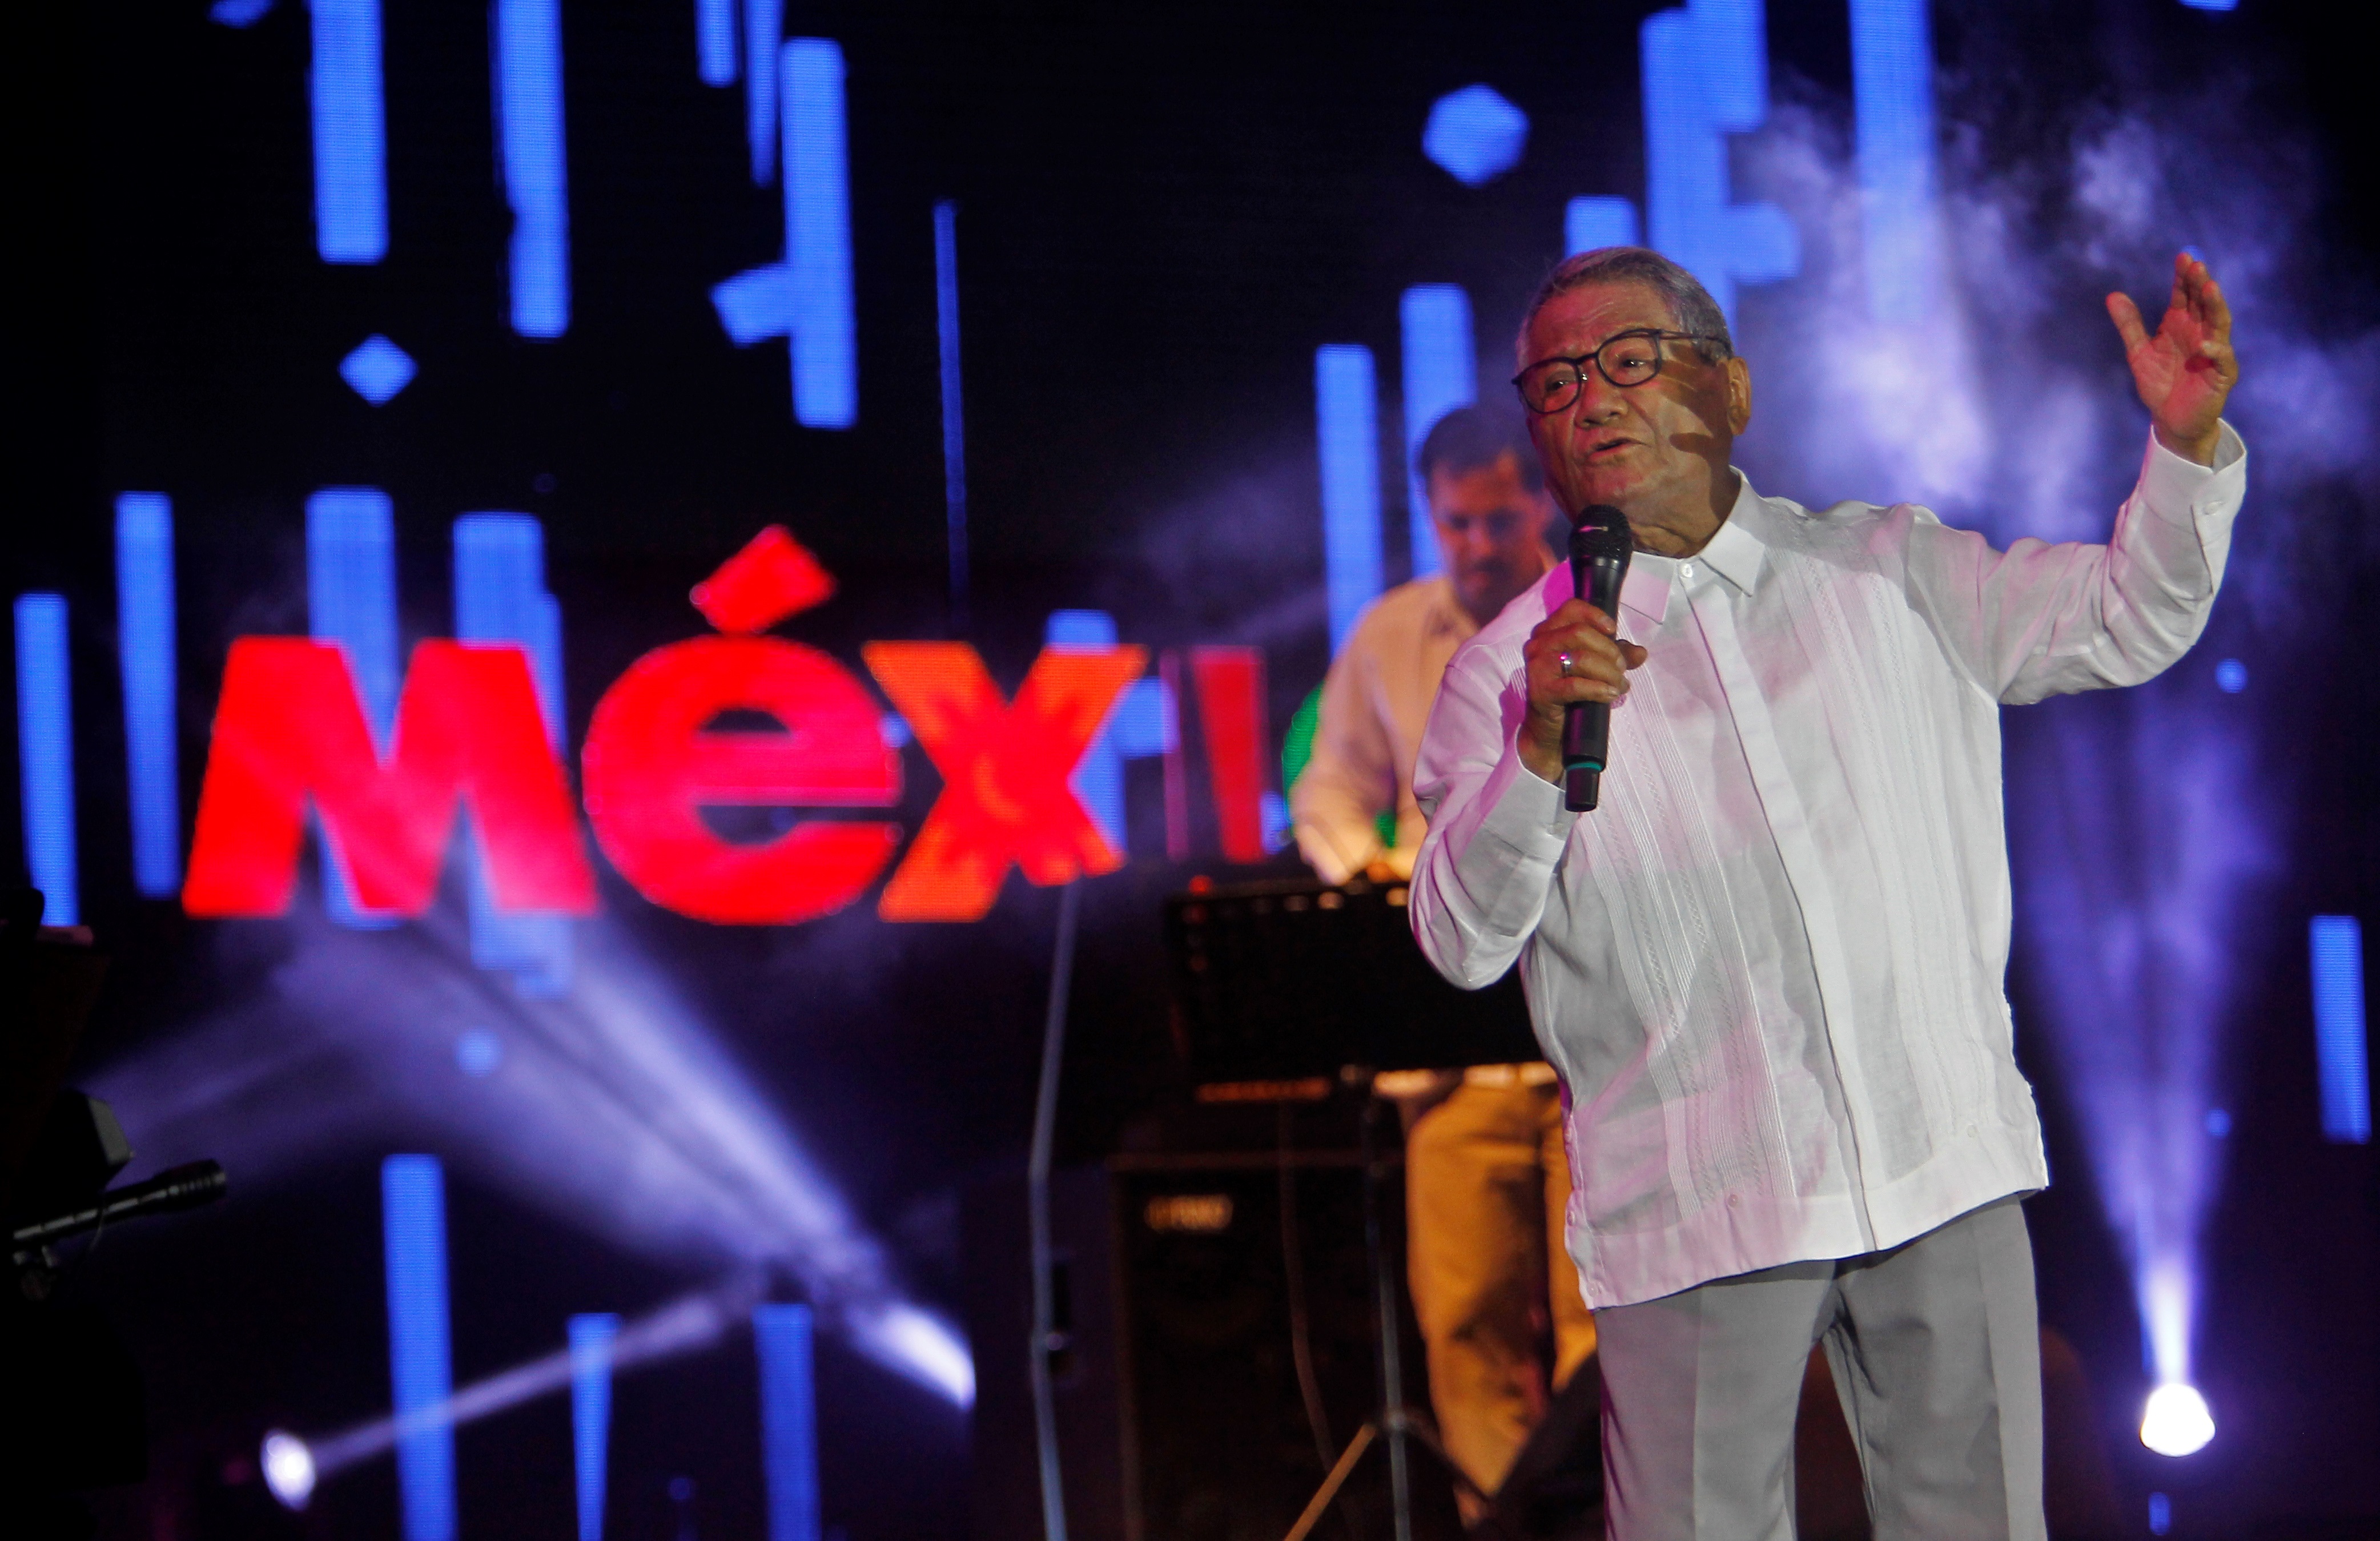 En la imagen, el cantautor mexicano Armando Manzanero. EFE/Yander Zamora/Archivo
